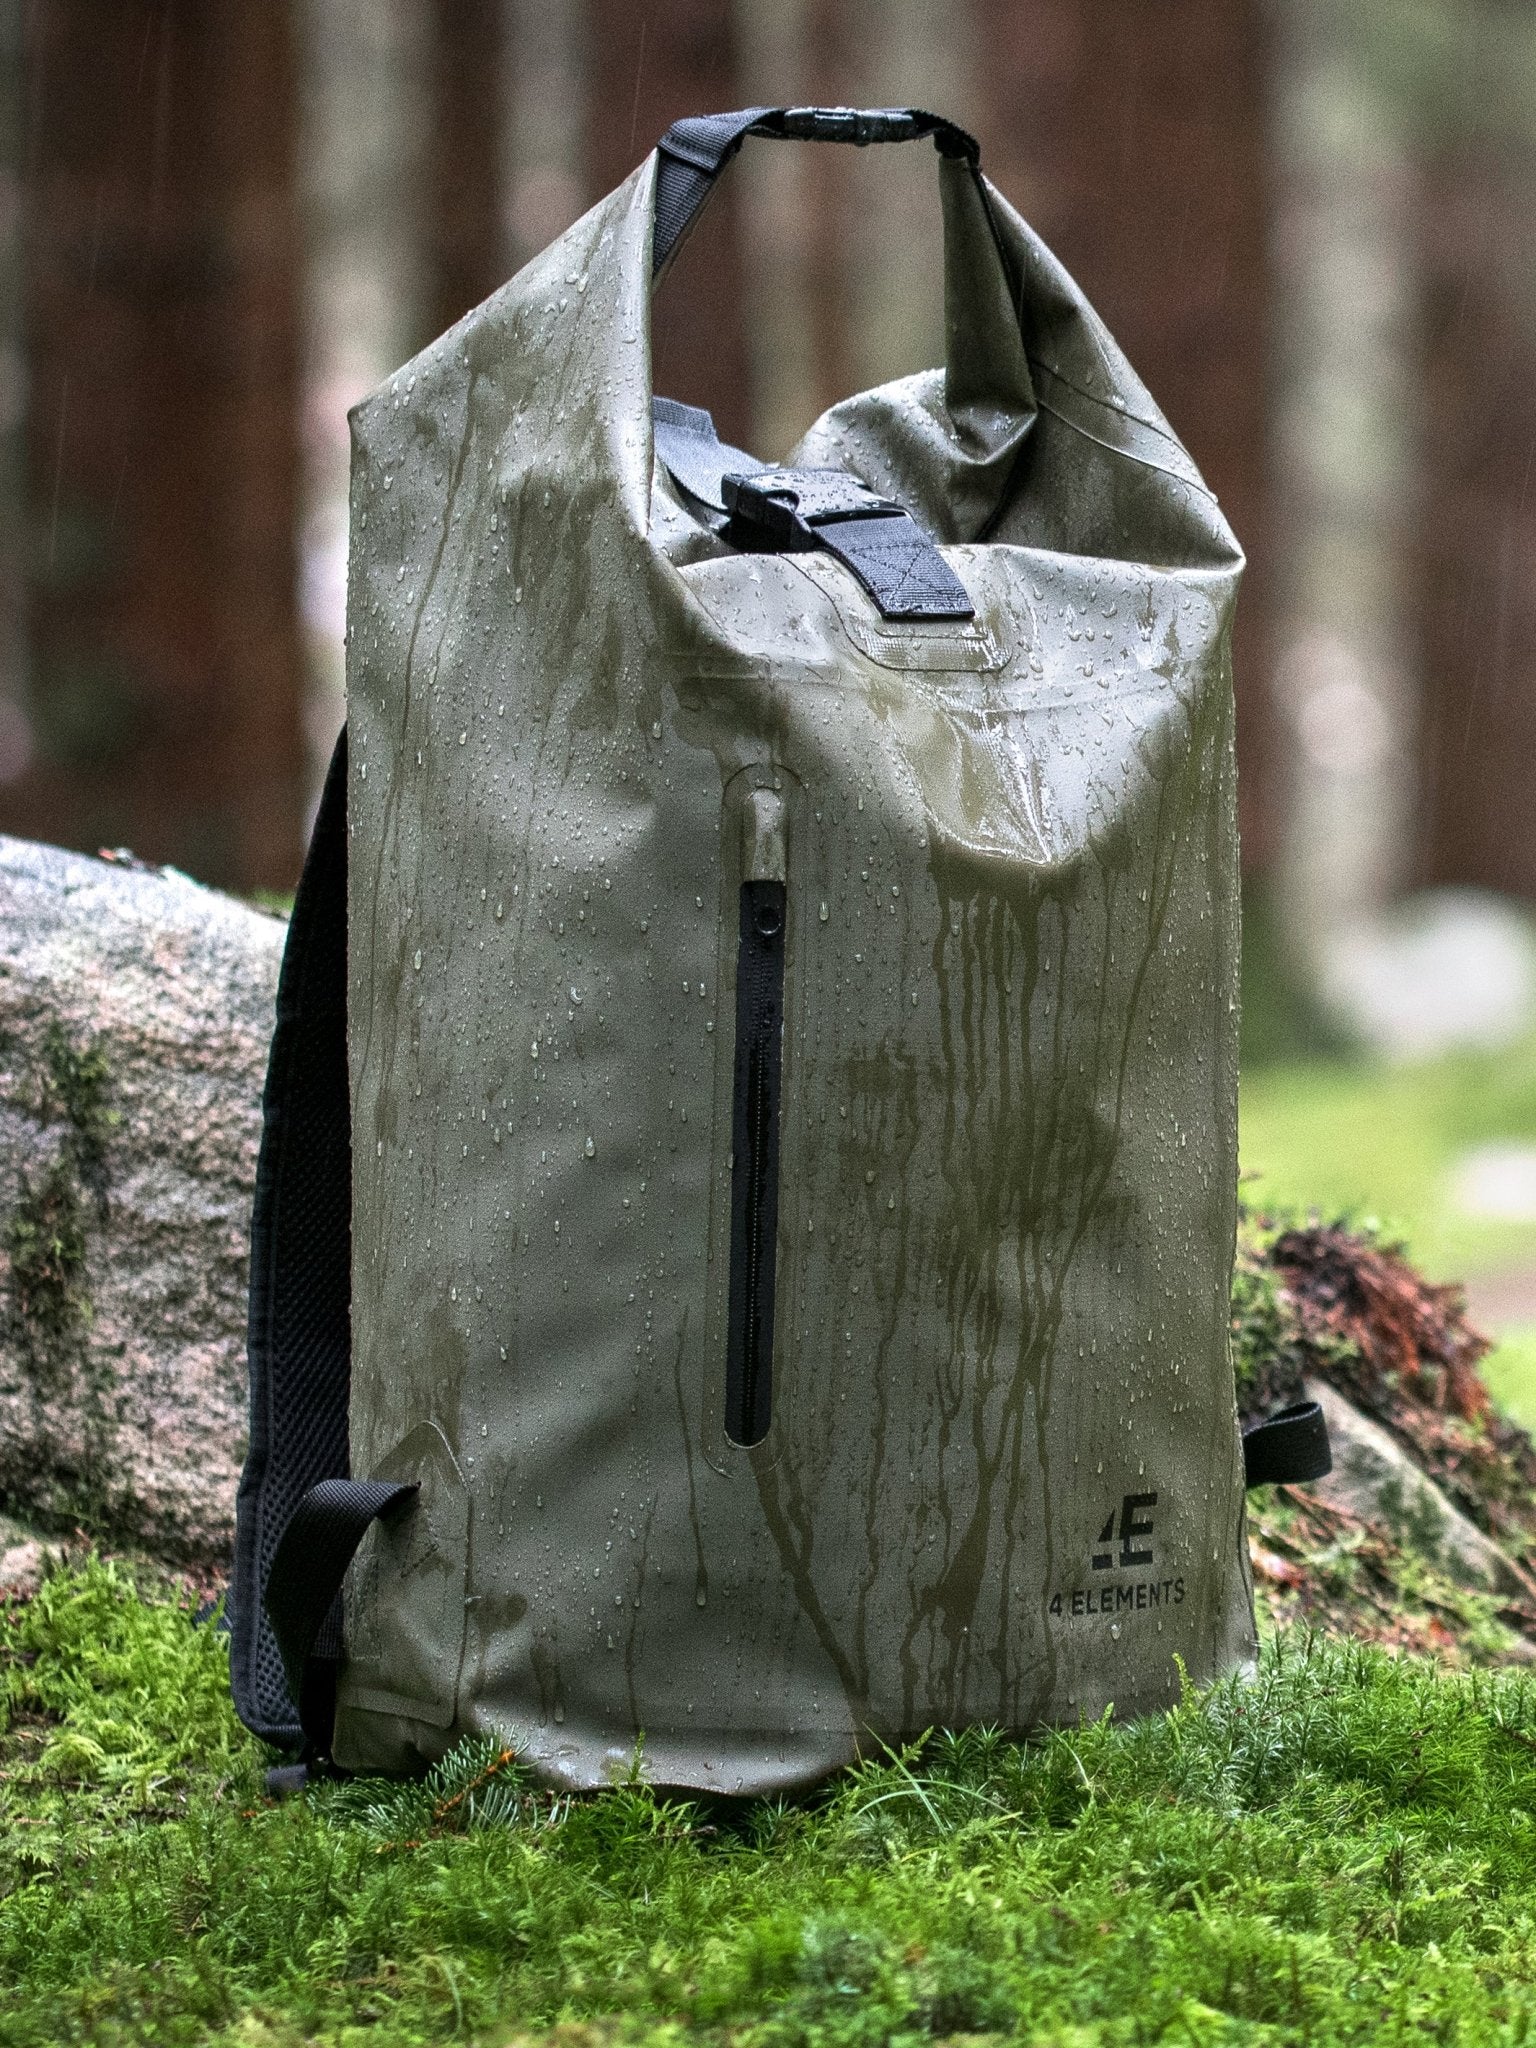 MIER Waterproof Backpack Sack Roll-Top Closure Dry Bag